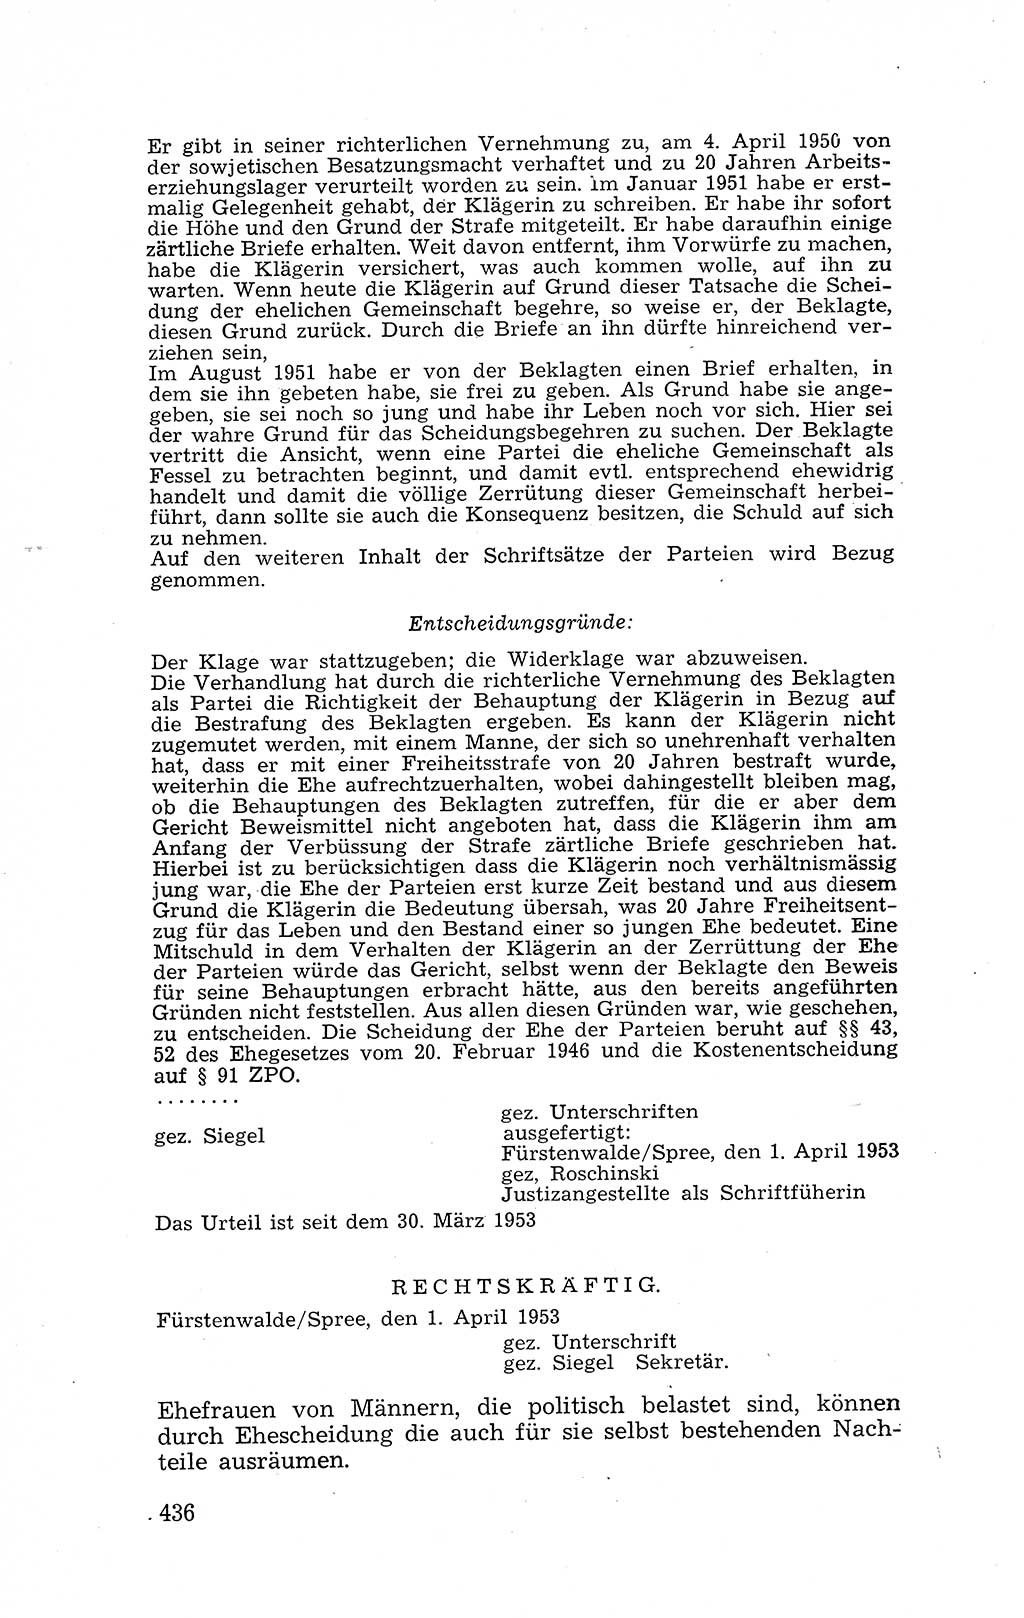 Recht in Fesseln, Dokumente, Internationale Juristen-Kommission [Bundesrepublik Deutschland (BRD)] 1955, Seite 436 (R. Dok. IJK BRD 1955, S. 436)